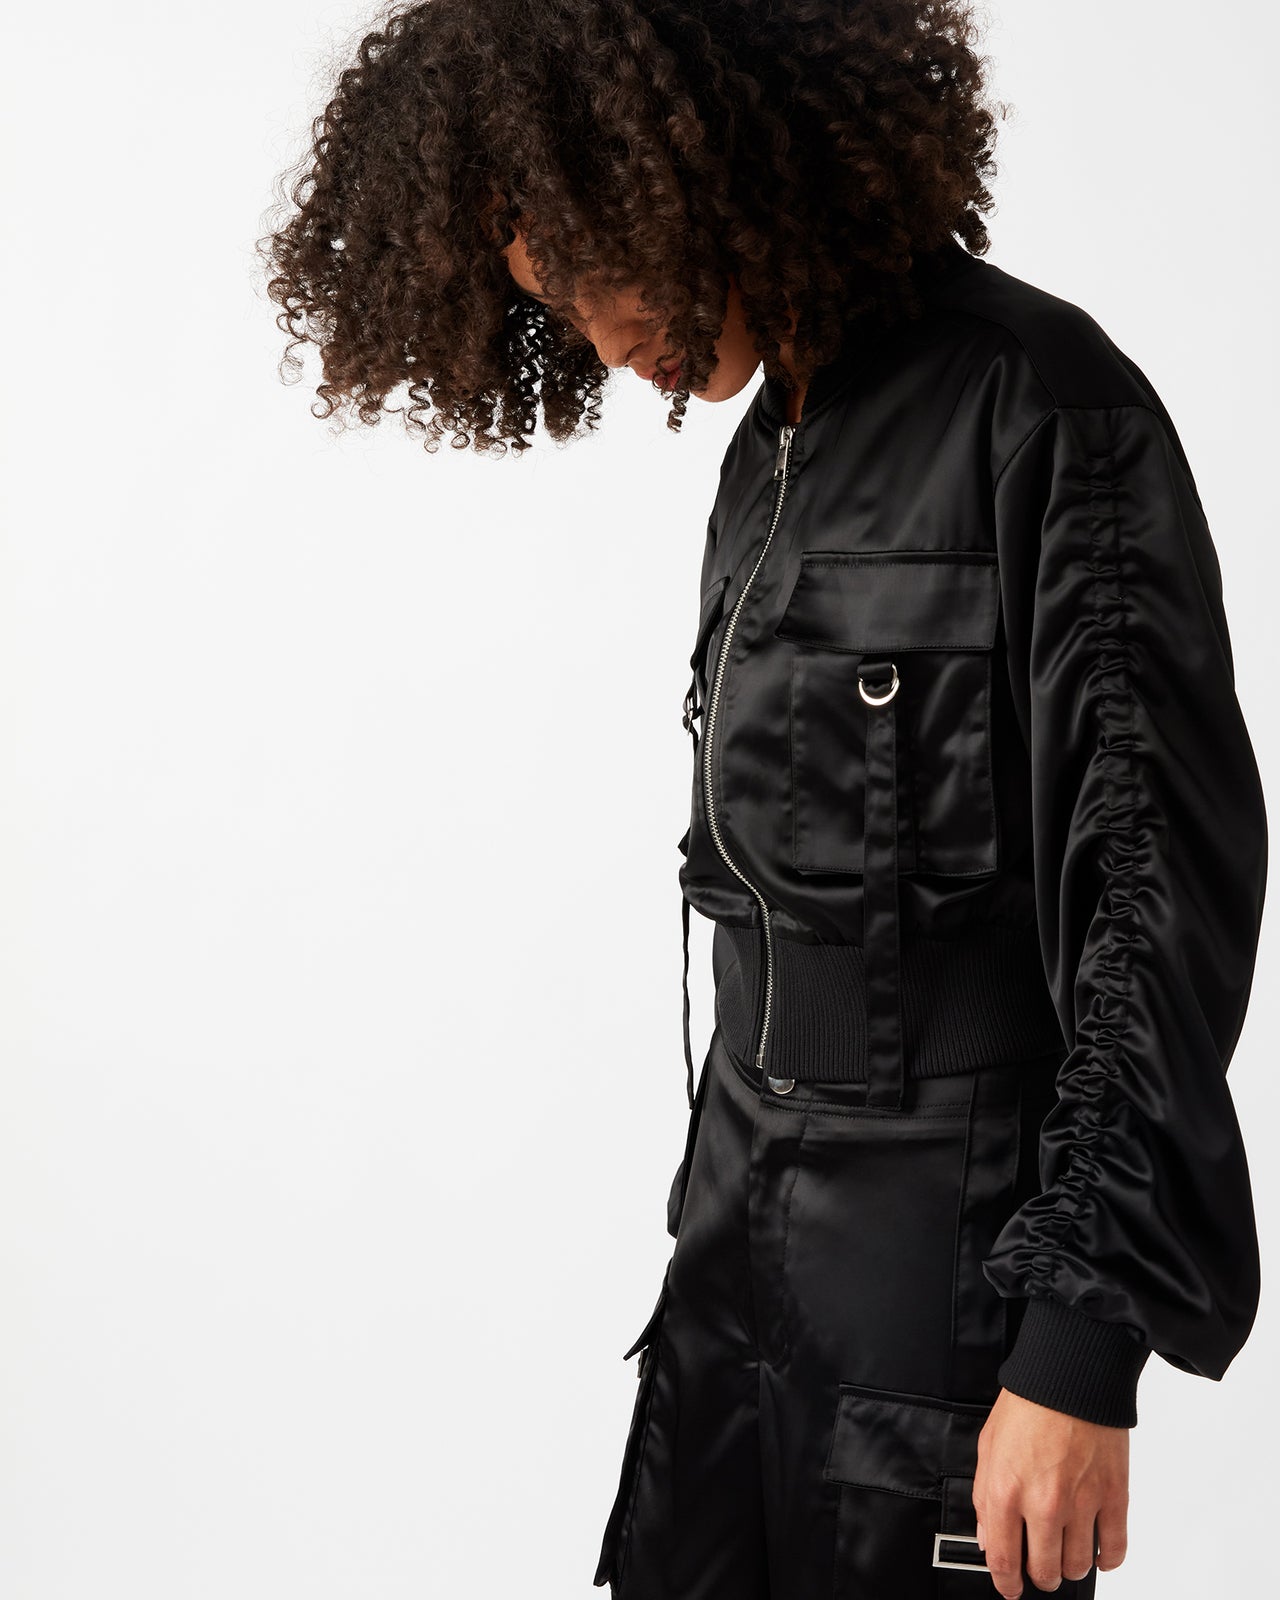 Costa Black Jacket, Jacket by Steve Madden | LIT Boutique